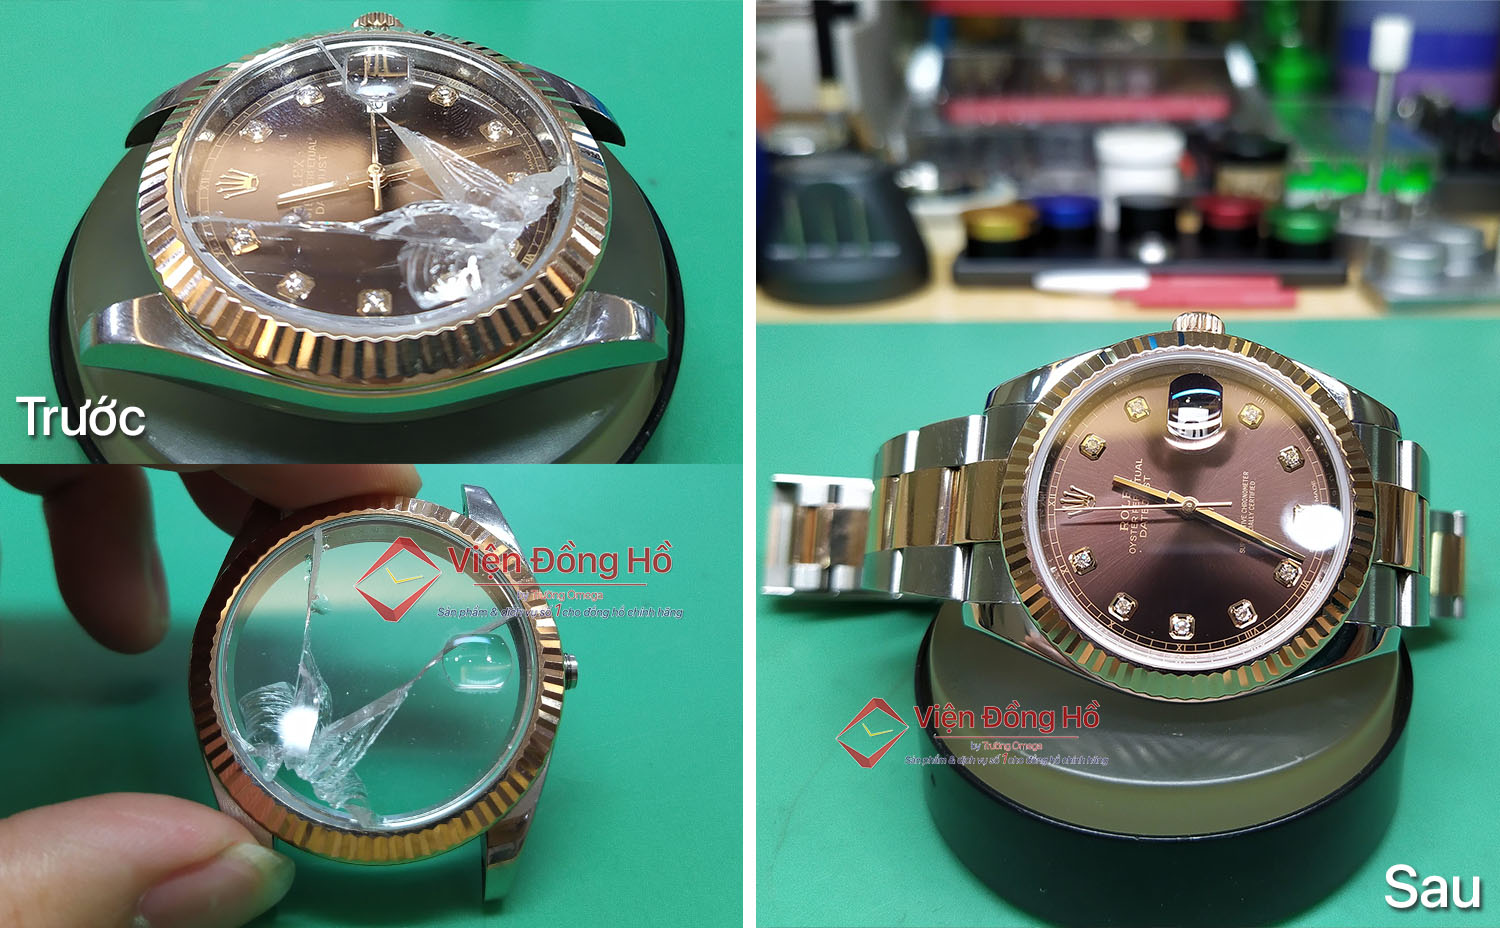 Thay mặt kính sapphire chính hãng và lau dầu bảo dưỡng toàn bộ cho đồng hồ Rolex chính hãng